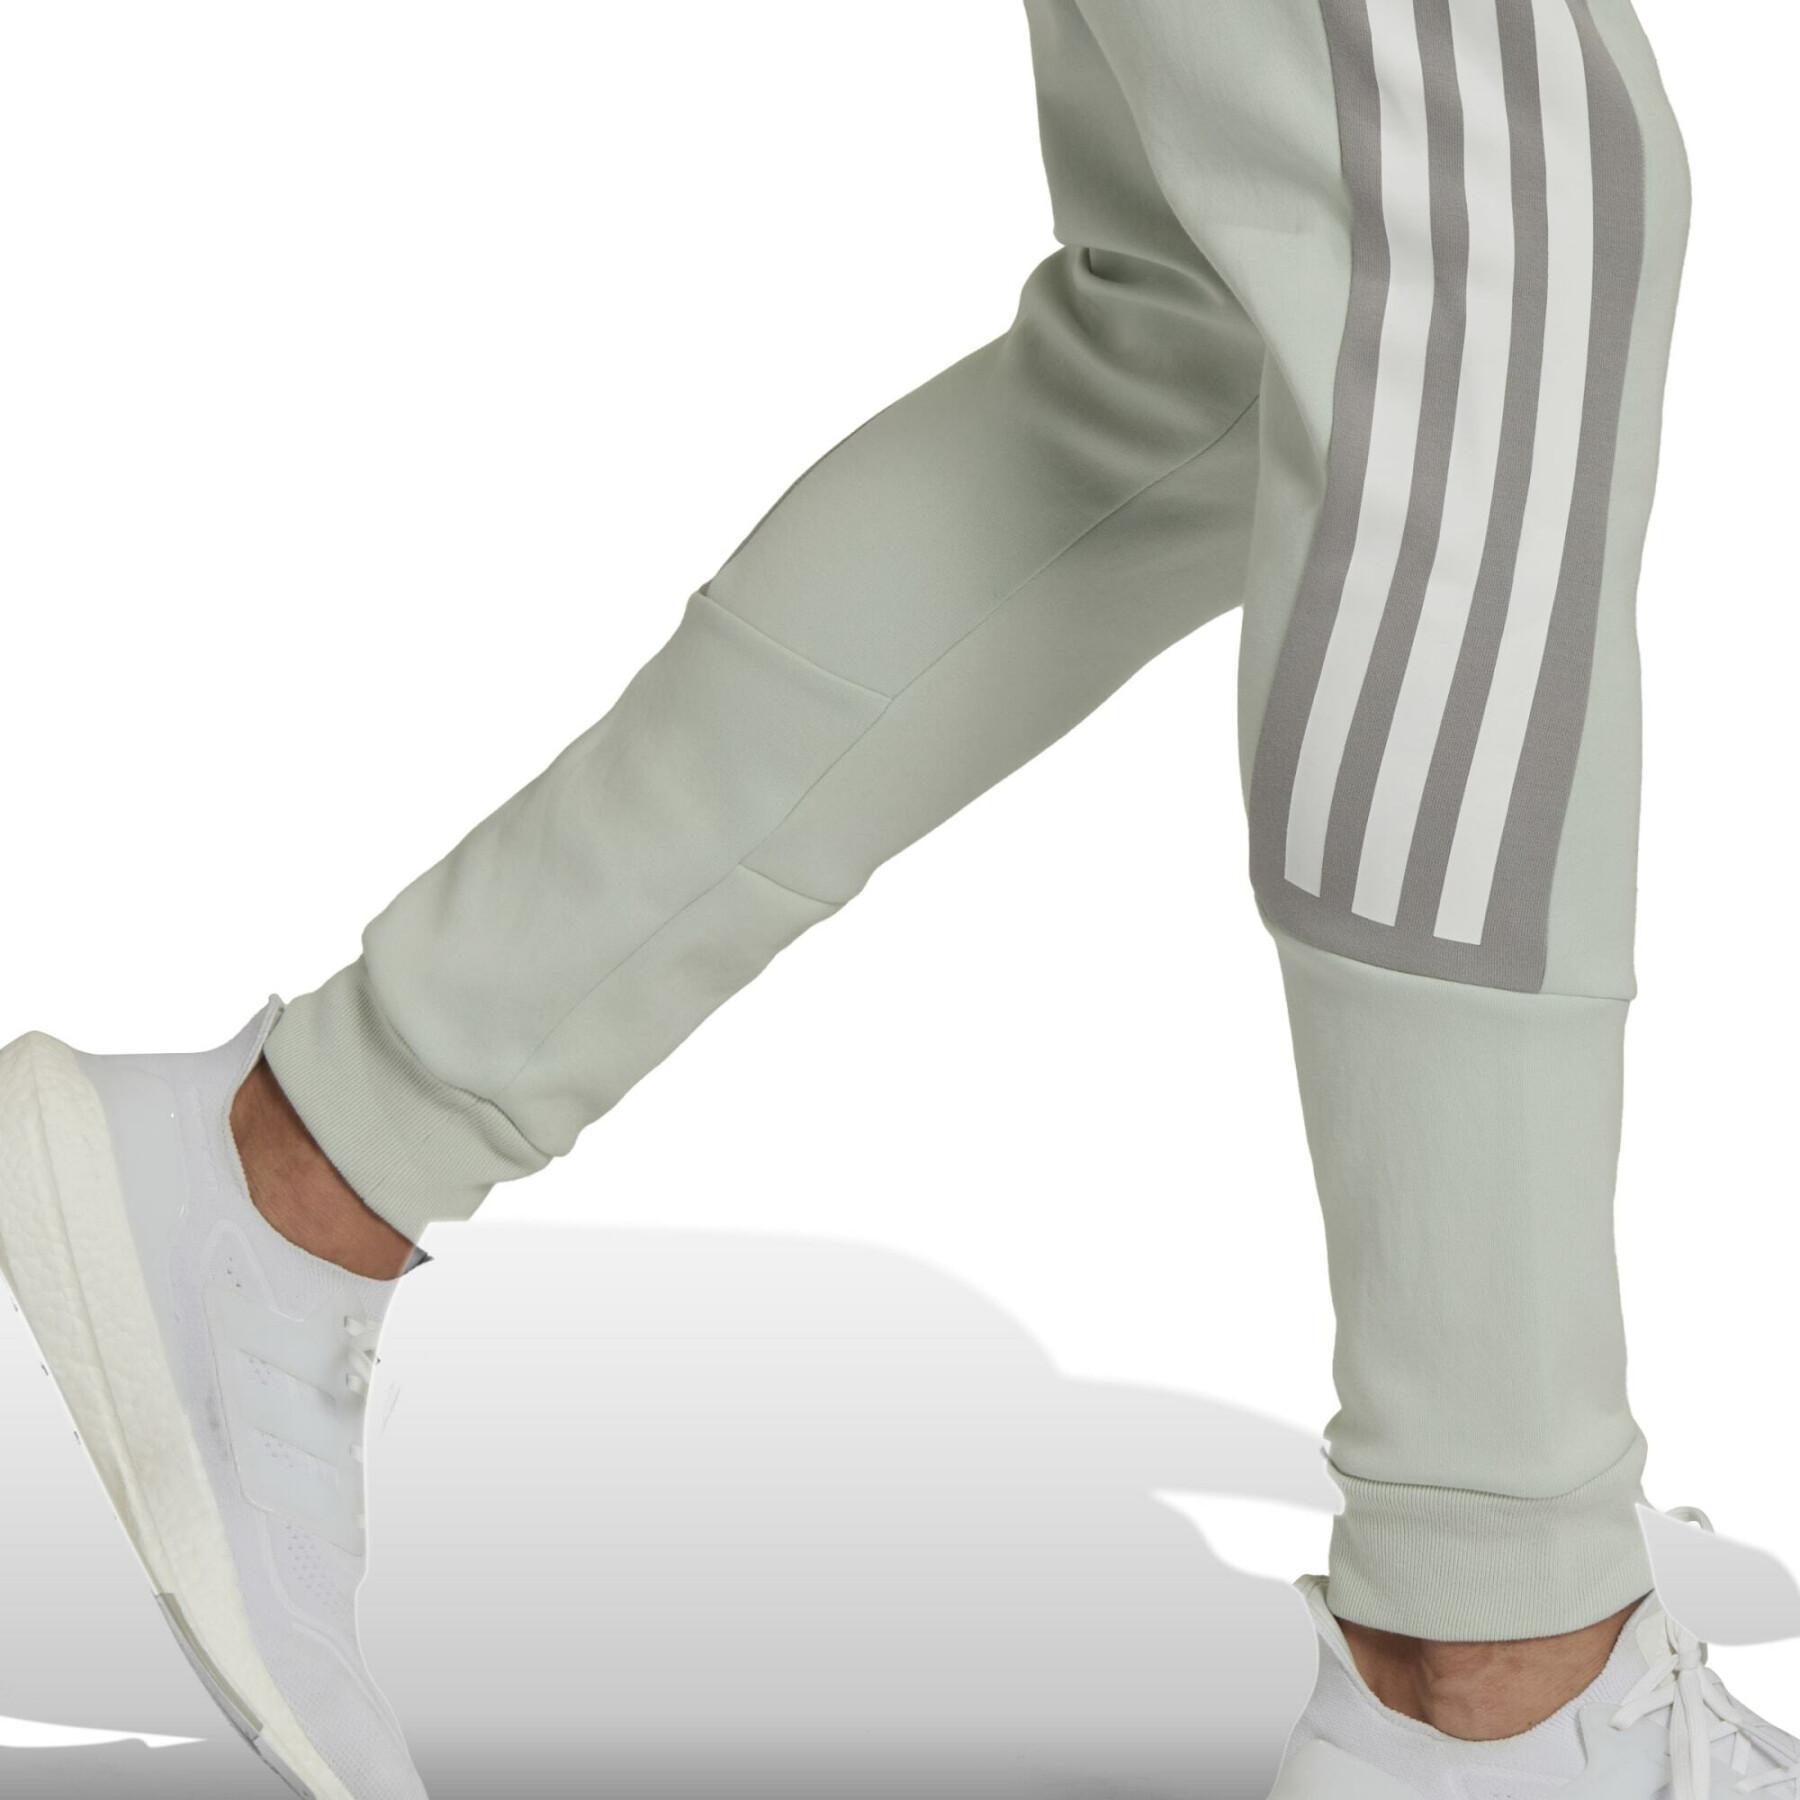 Pantalón de jogging adidas Future Icons